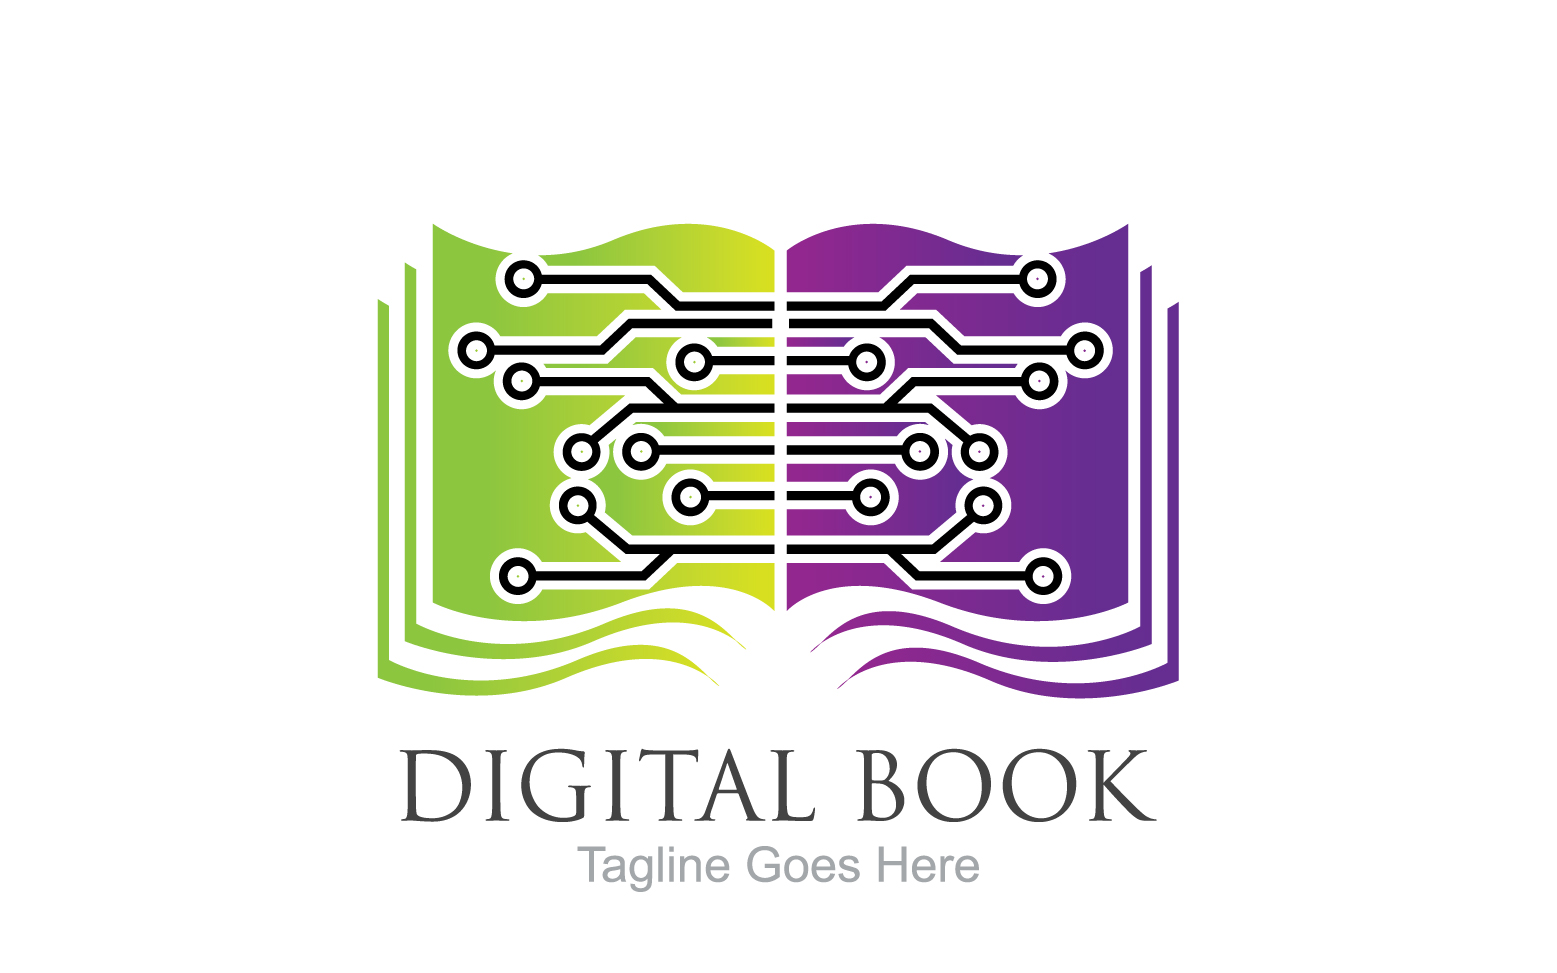 Book reading education logo vector v16